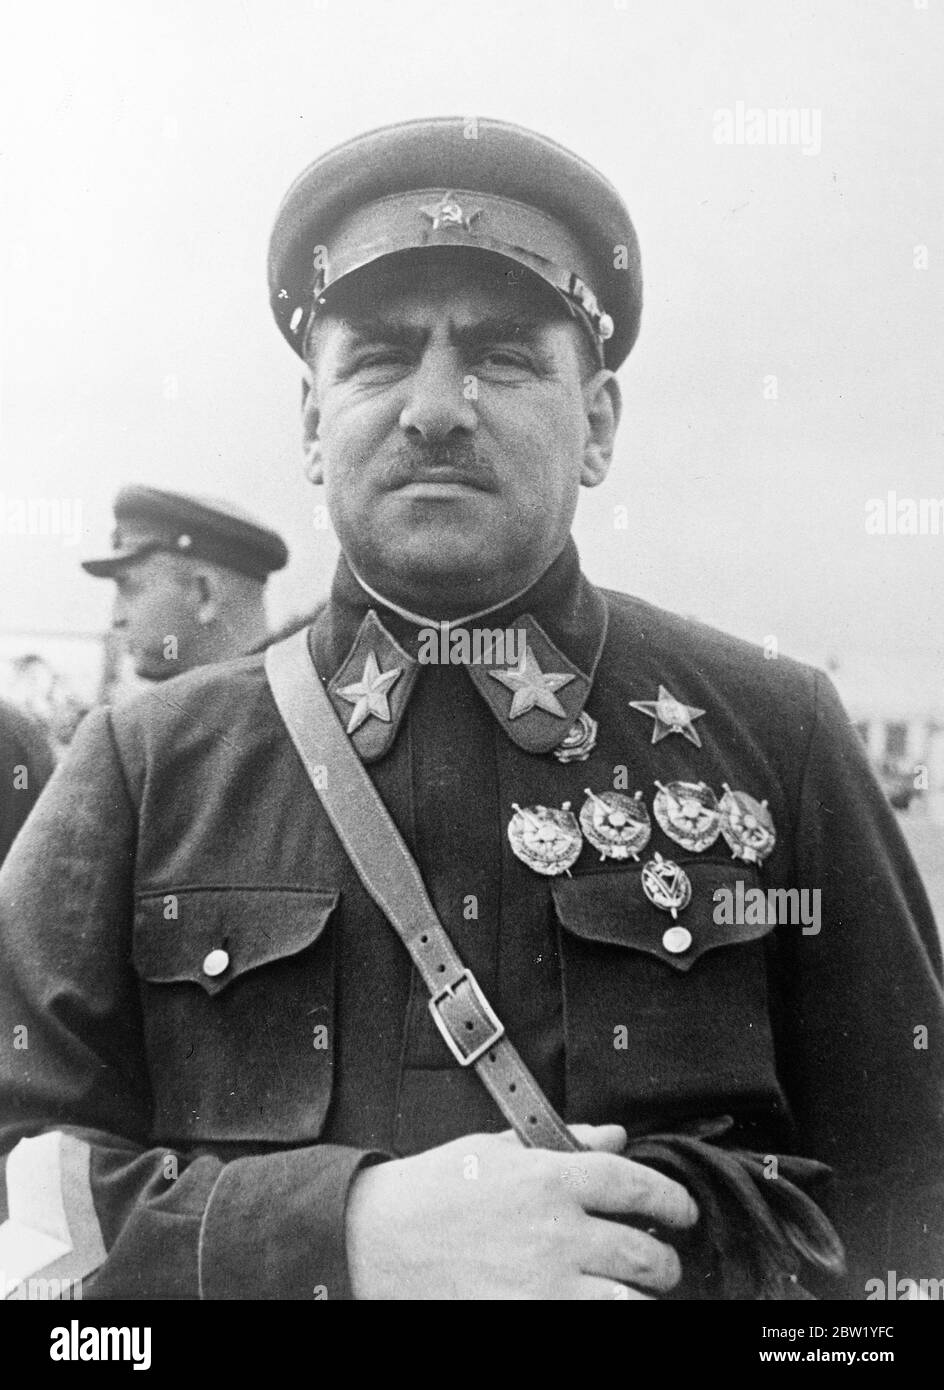 Le commandant soviétique de l'extrême-Orient a suggéré comme victime de la prochaine purge de Staline. Marshall V K B Lucher, commandant en chef de l'Armée rouge en extrême-Orient, est suggéré dans un message de bigs comme l'une des victimes de la prochaine "purge" de Staline d'éléments déloyaux en Union soviétique. Le Marshall Blucher aurait engagé une scène de colère contre Staline avant de siéger en tant que juge au procès pour trahison des huit généraux, et aurait ensuite prouvé sa loyauté en condamnant le Marshall Tukhachevsky, ancien vice-commissaire pour la défense, à mort. Photos, une photo récente de Marshall L K Blucher, soviétique Far E Banque D'Images